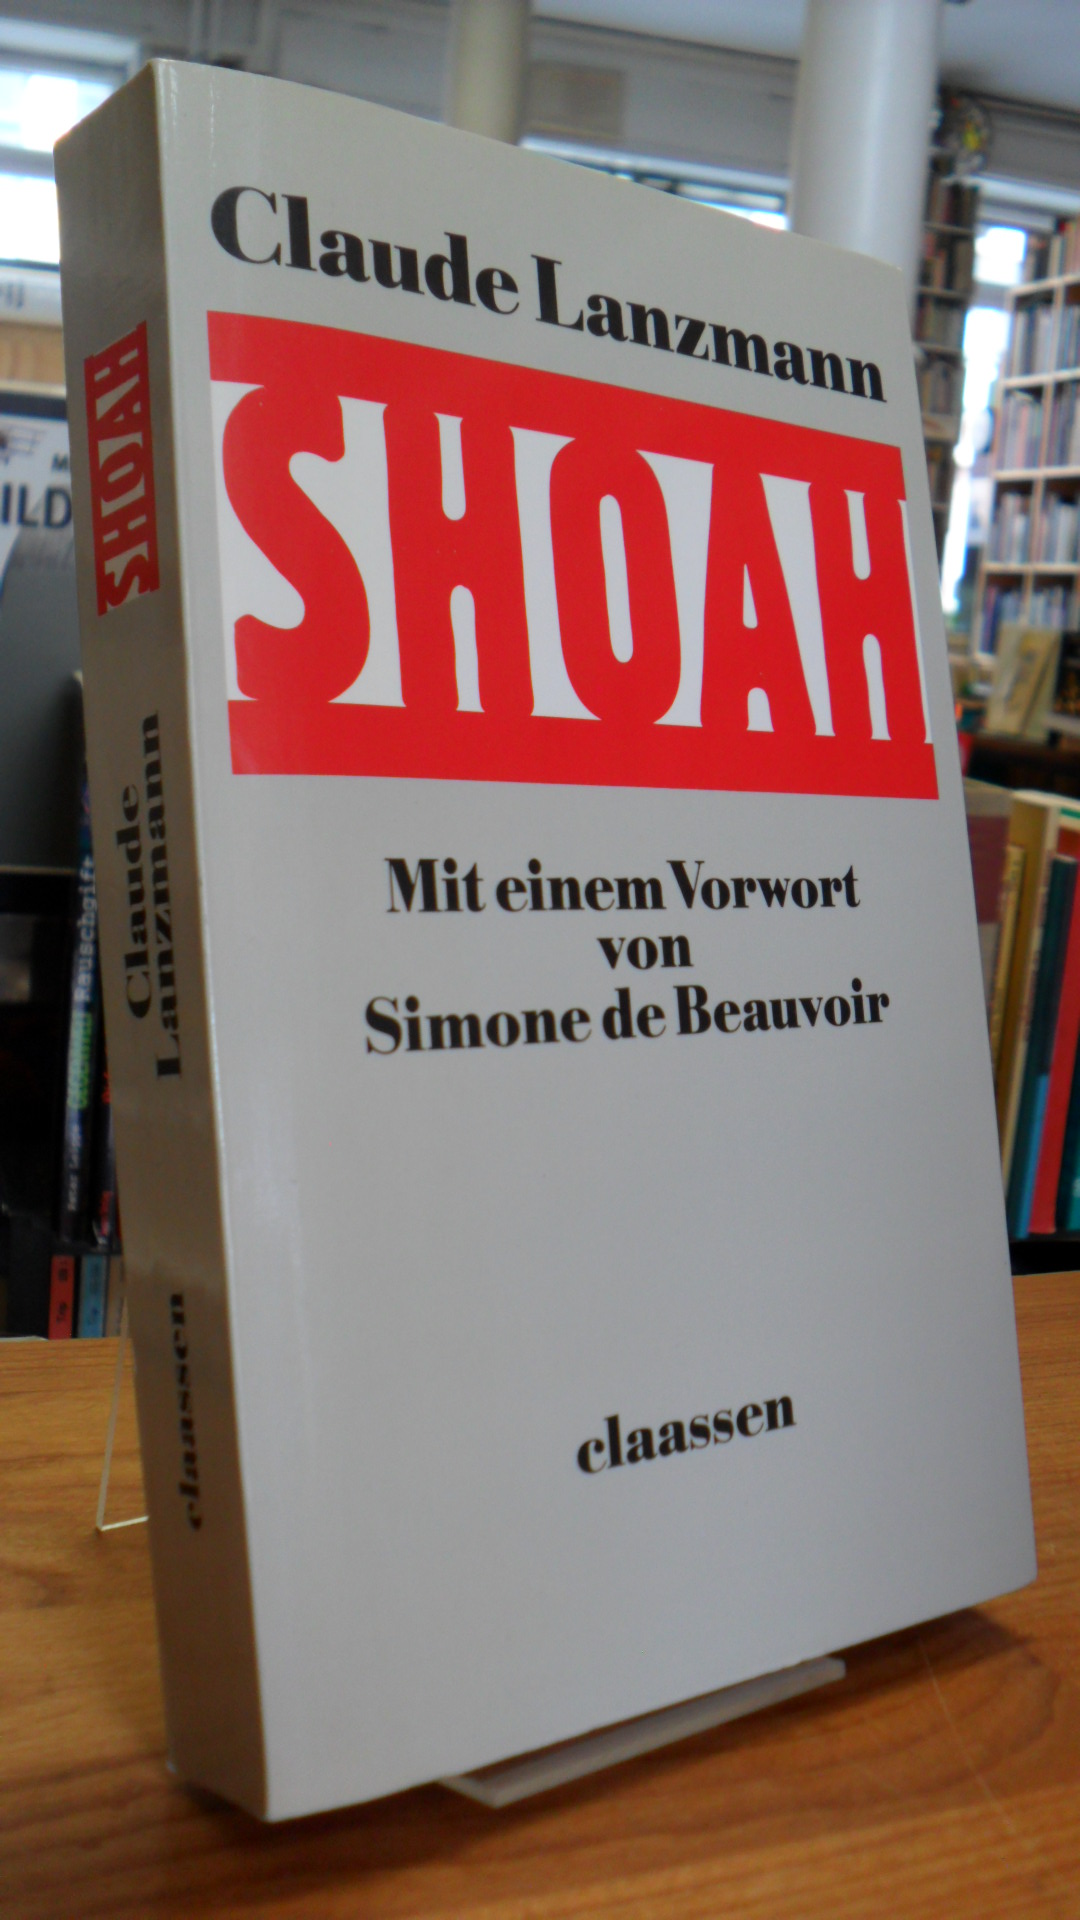 Lanzmann, Shoah – Mit einem Vorwort von Simone de Beauvoir,